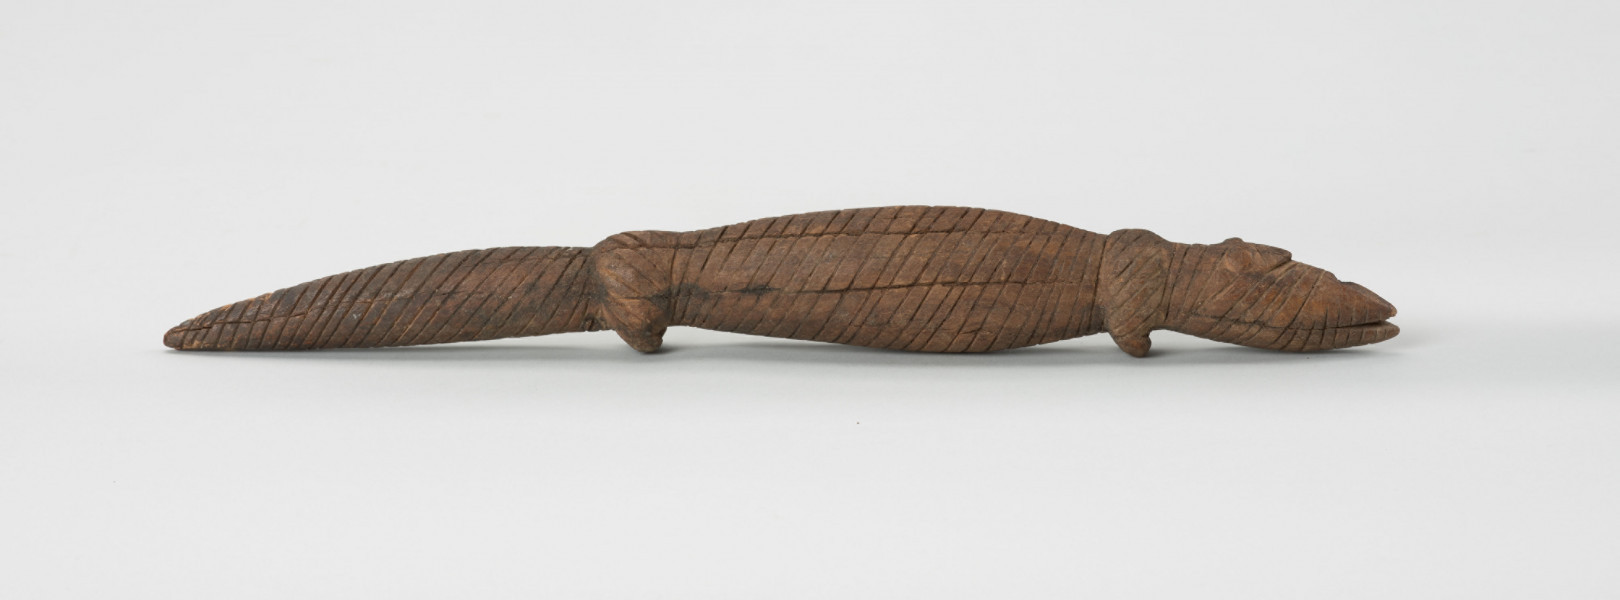 Drewniana figurka krokodyla - Ujęcie z prawej strony; Drewniana figurka krokodyla, na całej długości pokryta drobnymi nacięciami. Zaznaczona długa głowa, długi tułów oraz gruby ogon, zakończony spiczaście i spuszczony do dołu. Zaznaczone proste, krótkie kończyny przednie i tylne.